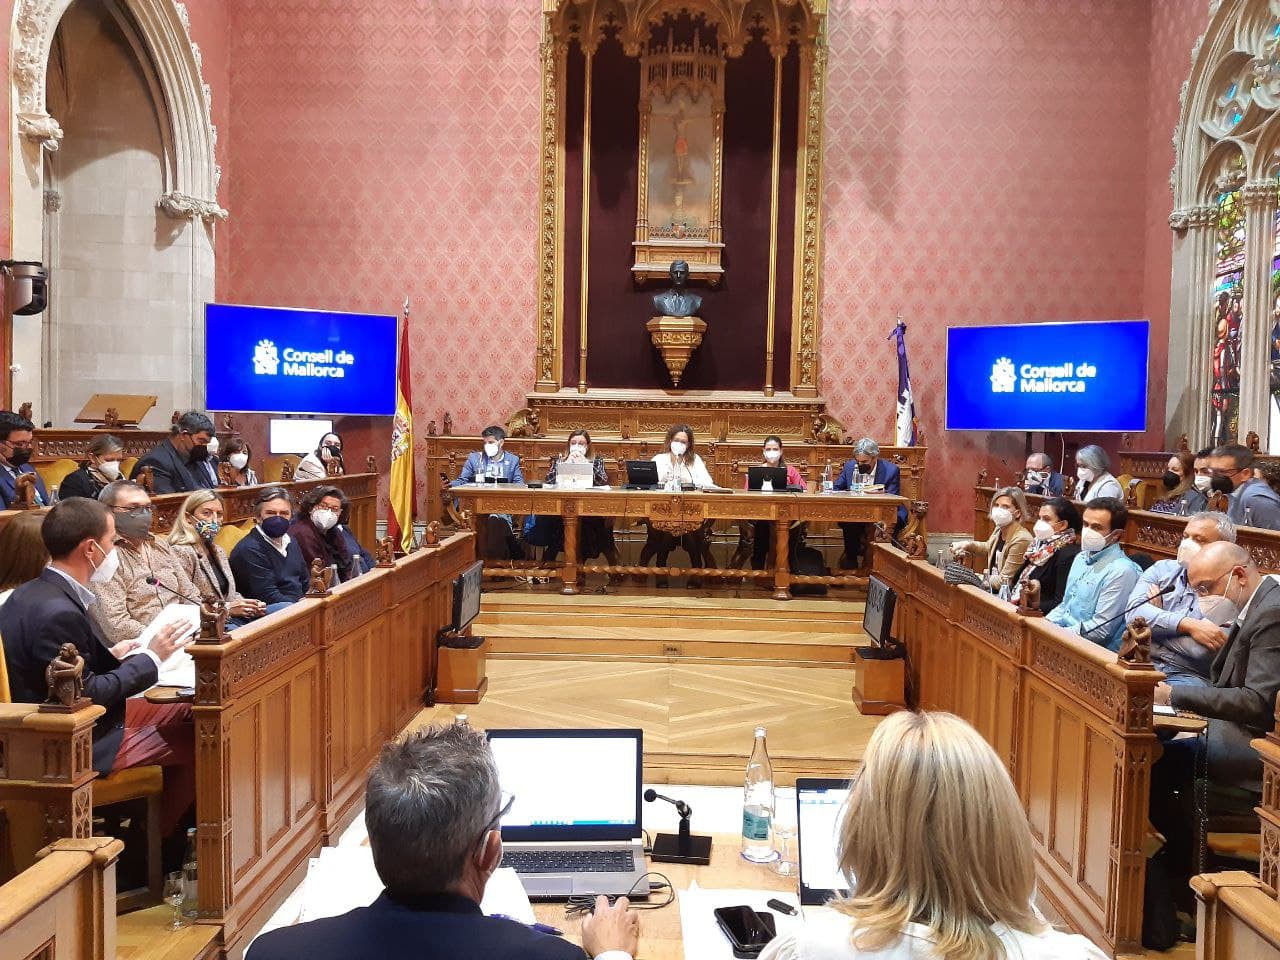 Sessió extraordinària del Ple del Consell de Mallorca